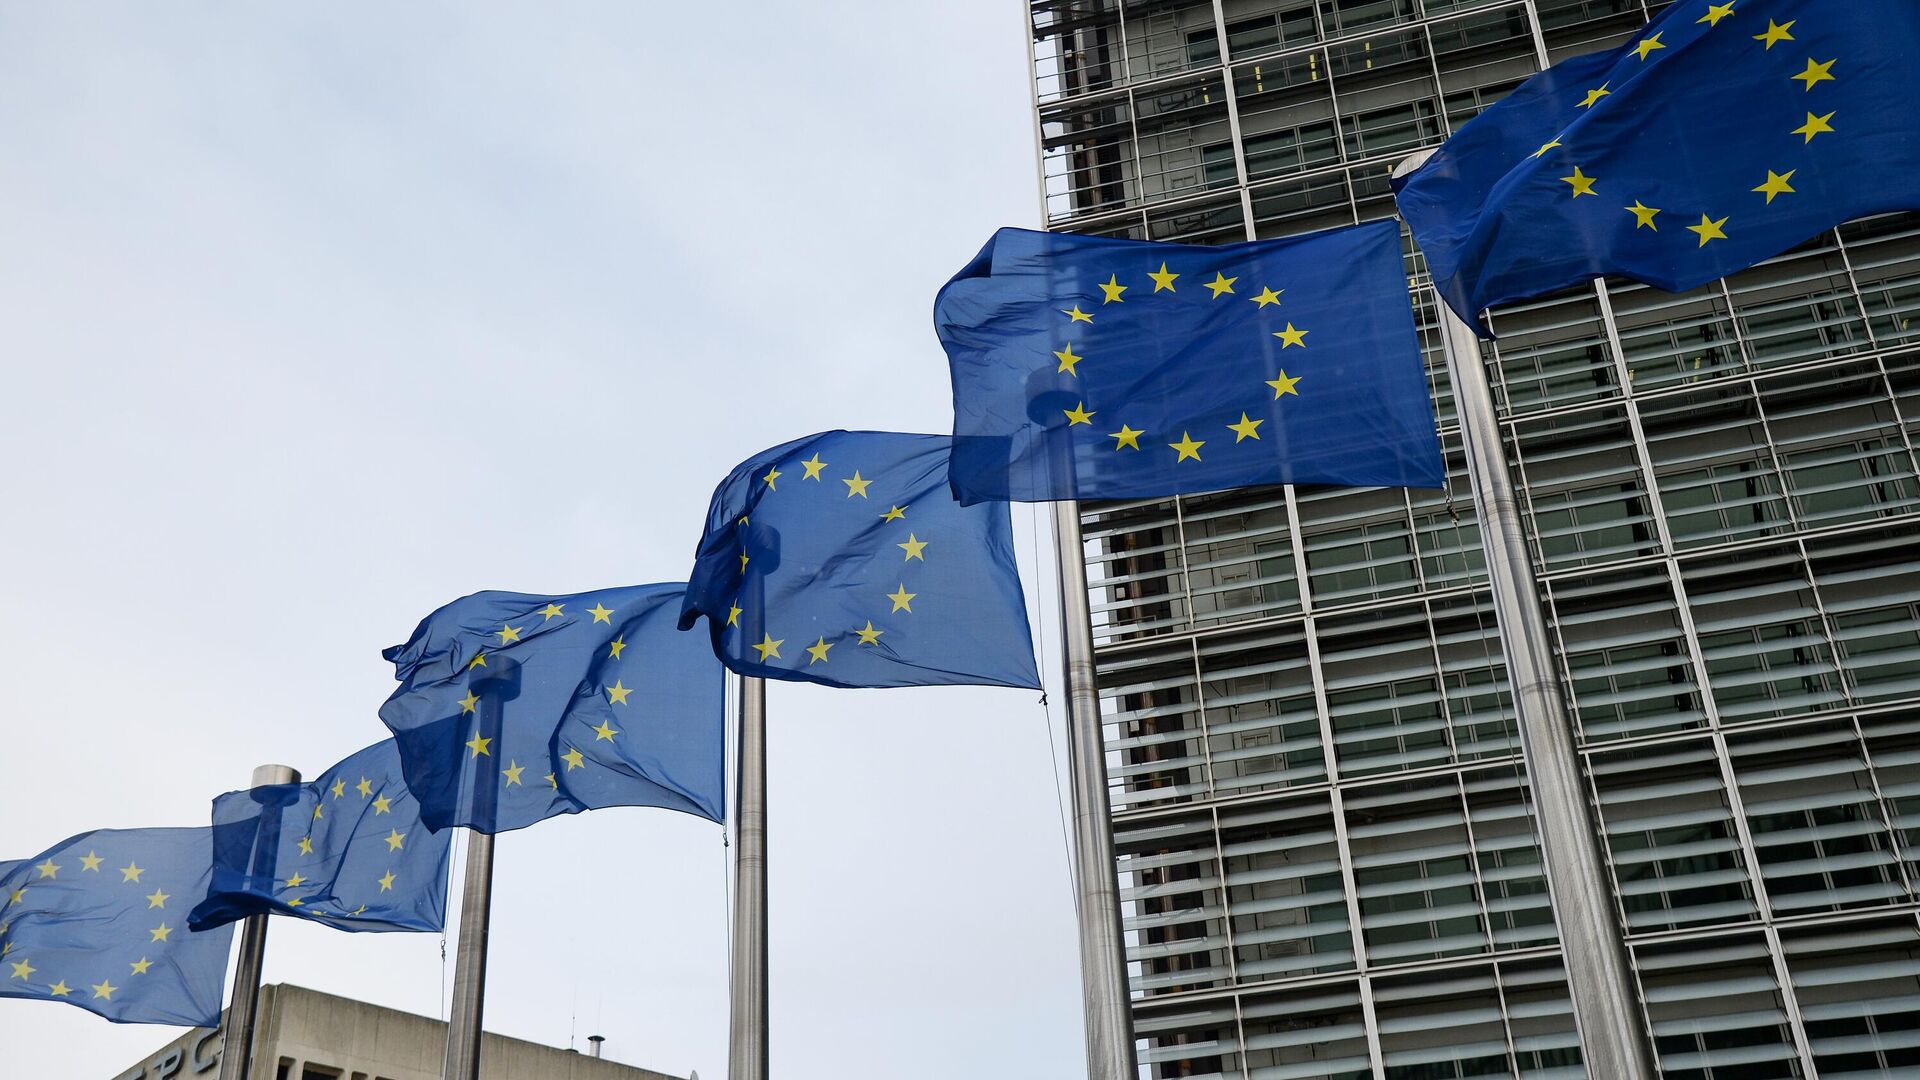 Флаги Евросоюза возле здания штаб-квартиры Европейского парламента в Брюсселе - РИА Новости, 1920, 27.10.2021